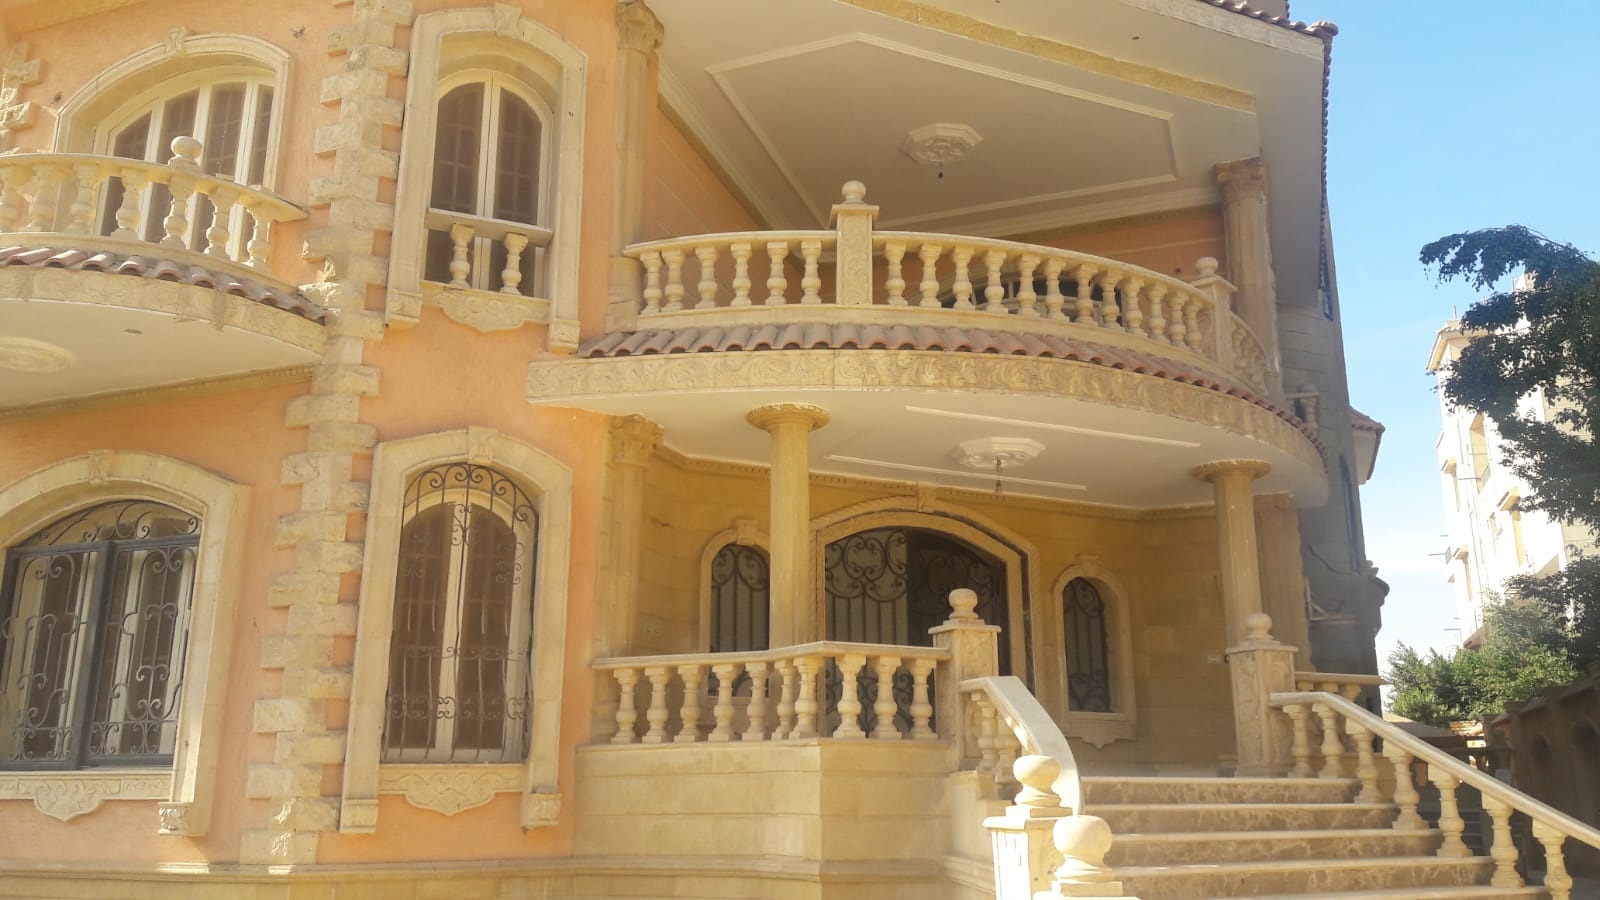 Special Standalone Villa 250 M2 For Sale At El Shorouk City فيلا مستقلة مميزة 250 متر للبيع فى مدينة الشروق.jpg